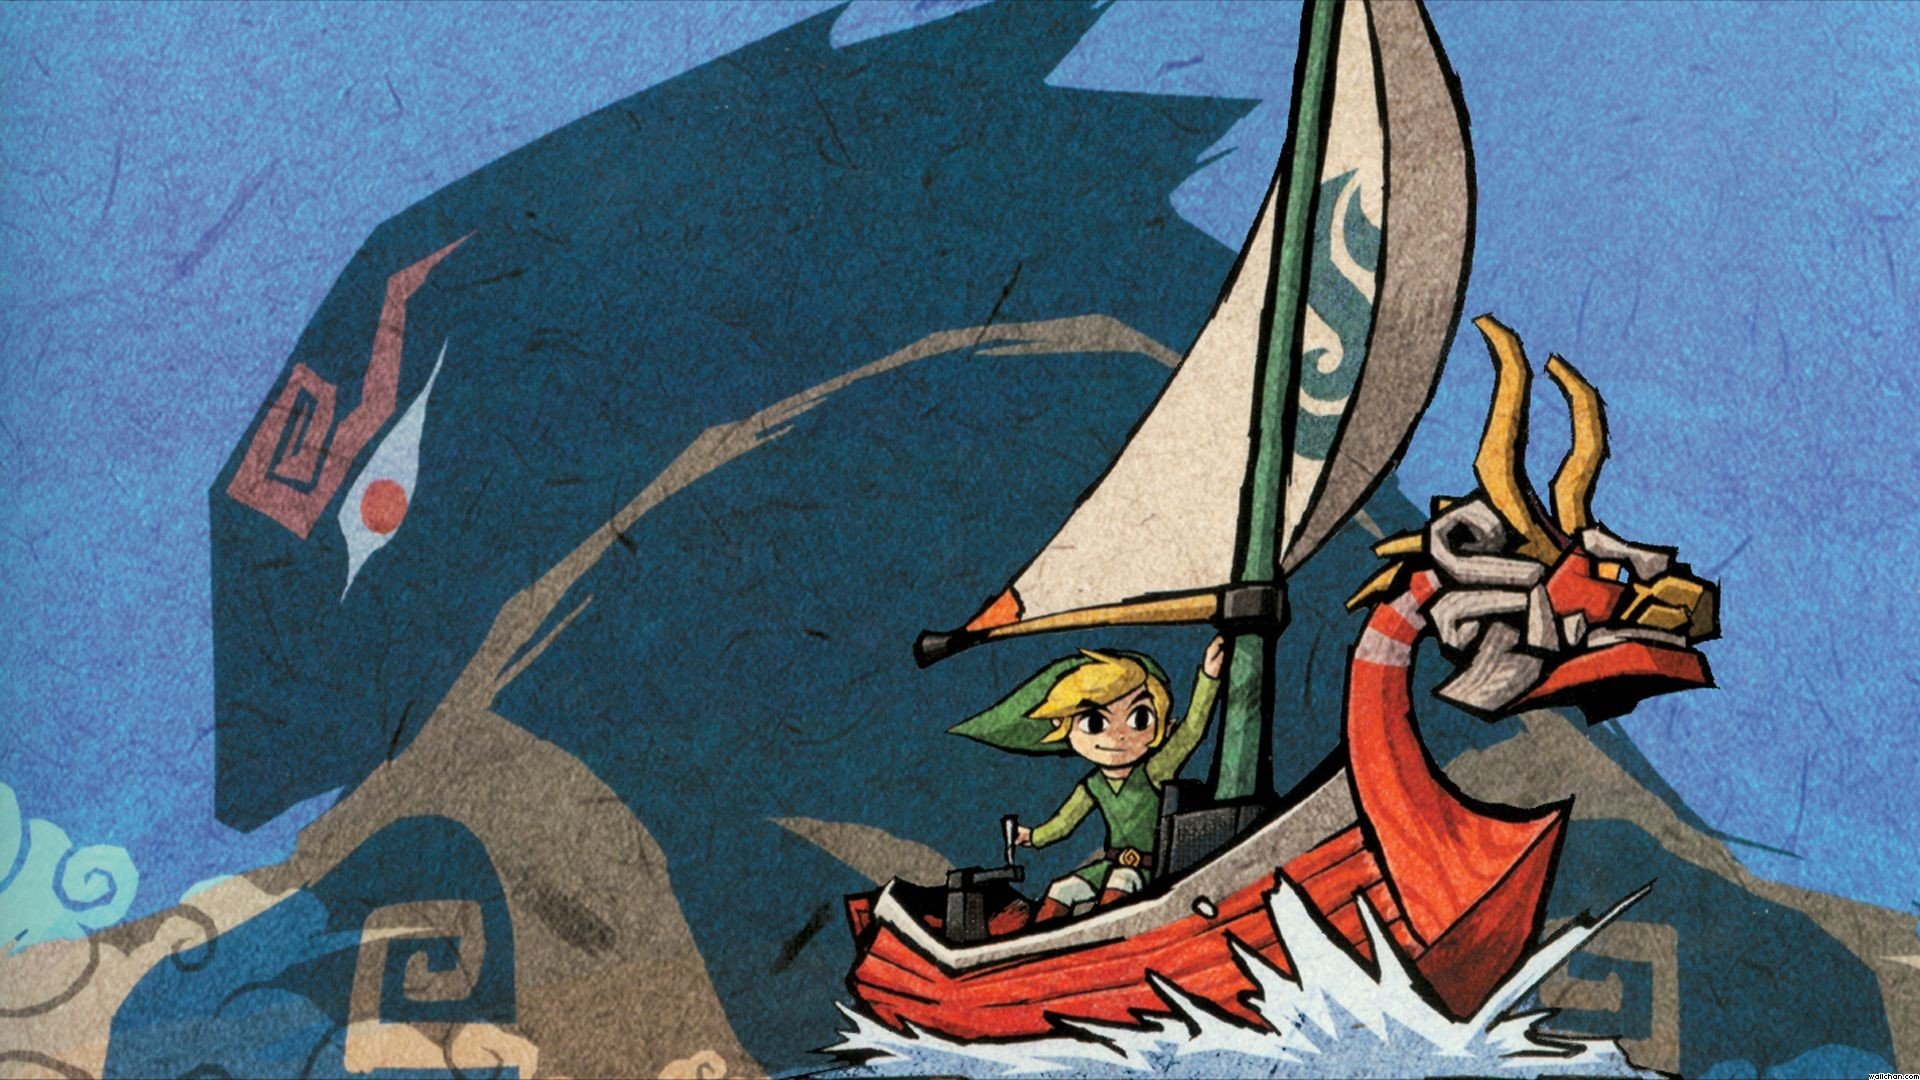 Zelda, The Legend of Zelda: Wind Waker, The Legend of Zelda, Link, Ganondorf Wallpaper